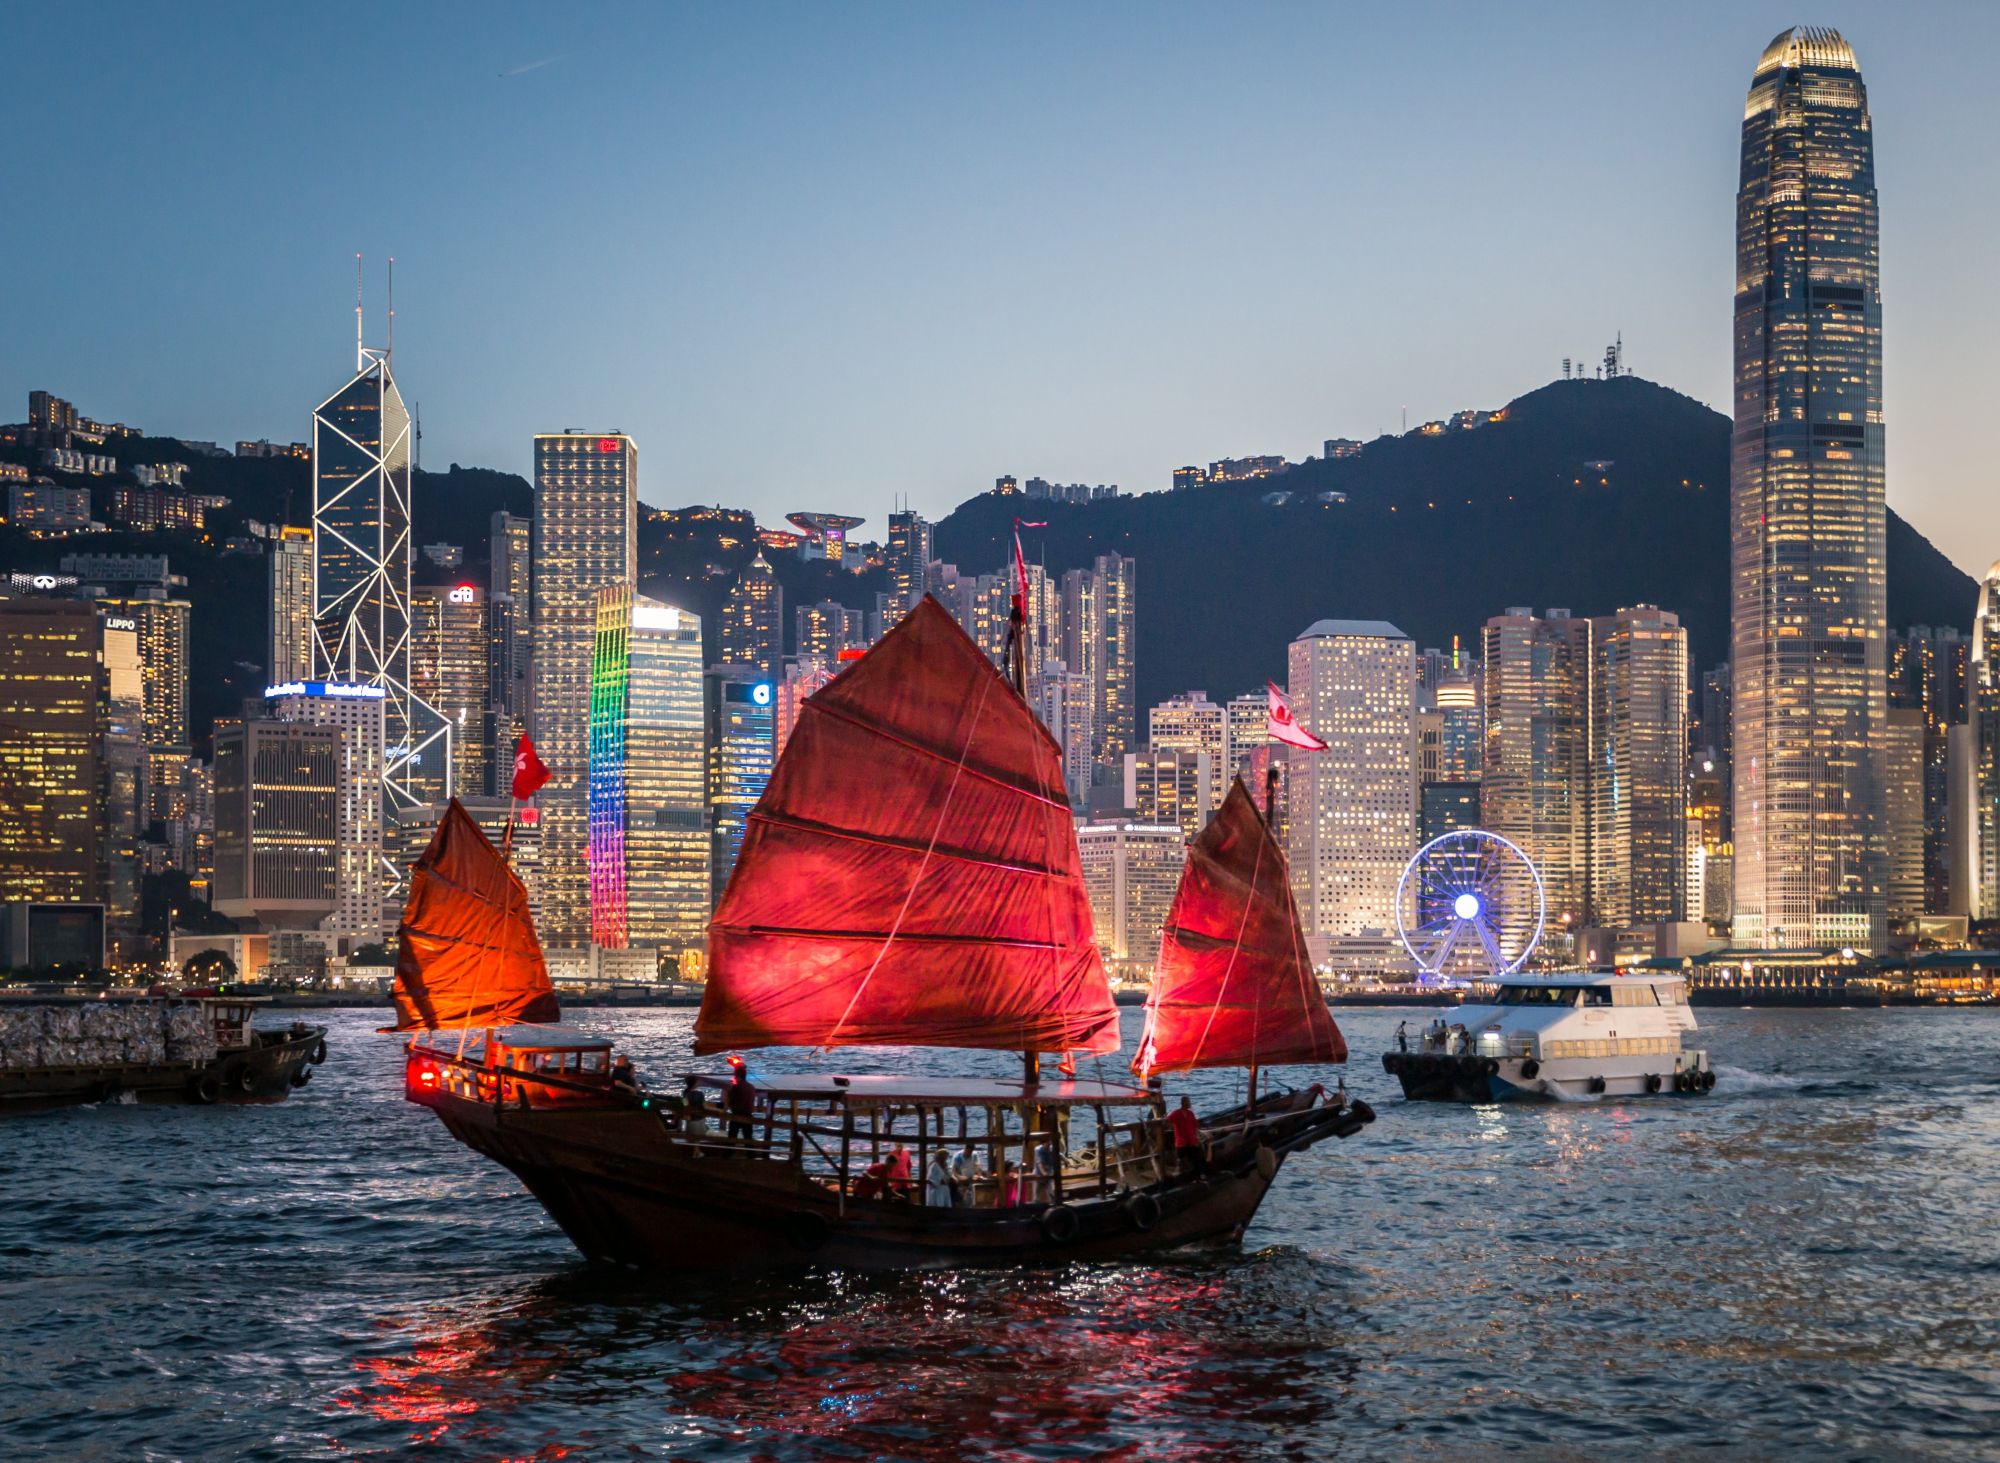 Холст ХК-5876 с красками Корабль в Гонконге 40*50см Рыжий кот - Орск 